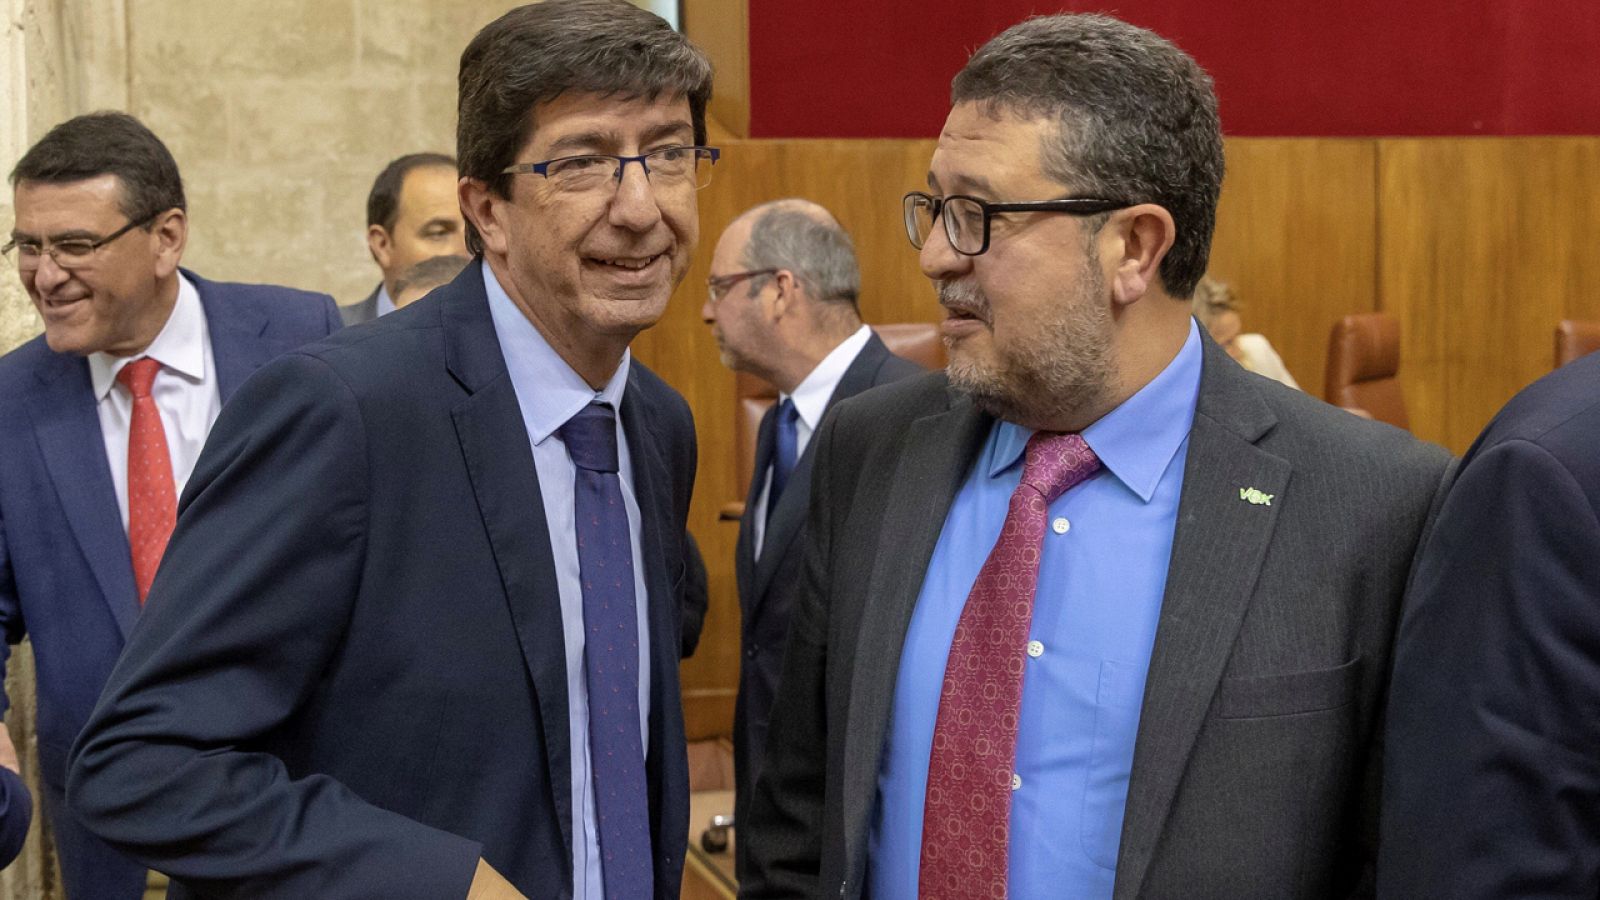 El vicepresidente del gobierno andaluz, Juan Marín, conversa con el portavoz de VOX, Francisco Serrano, en un pleno del Parlamento de Andalucía.